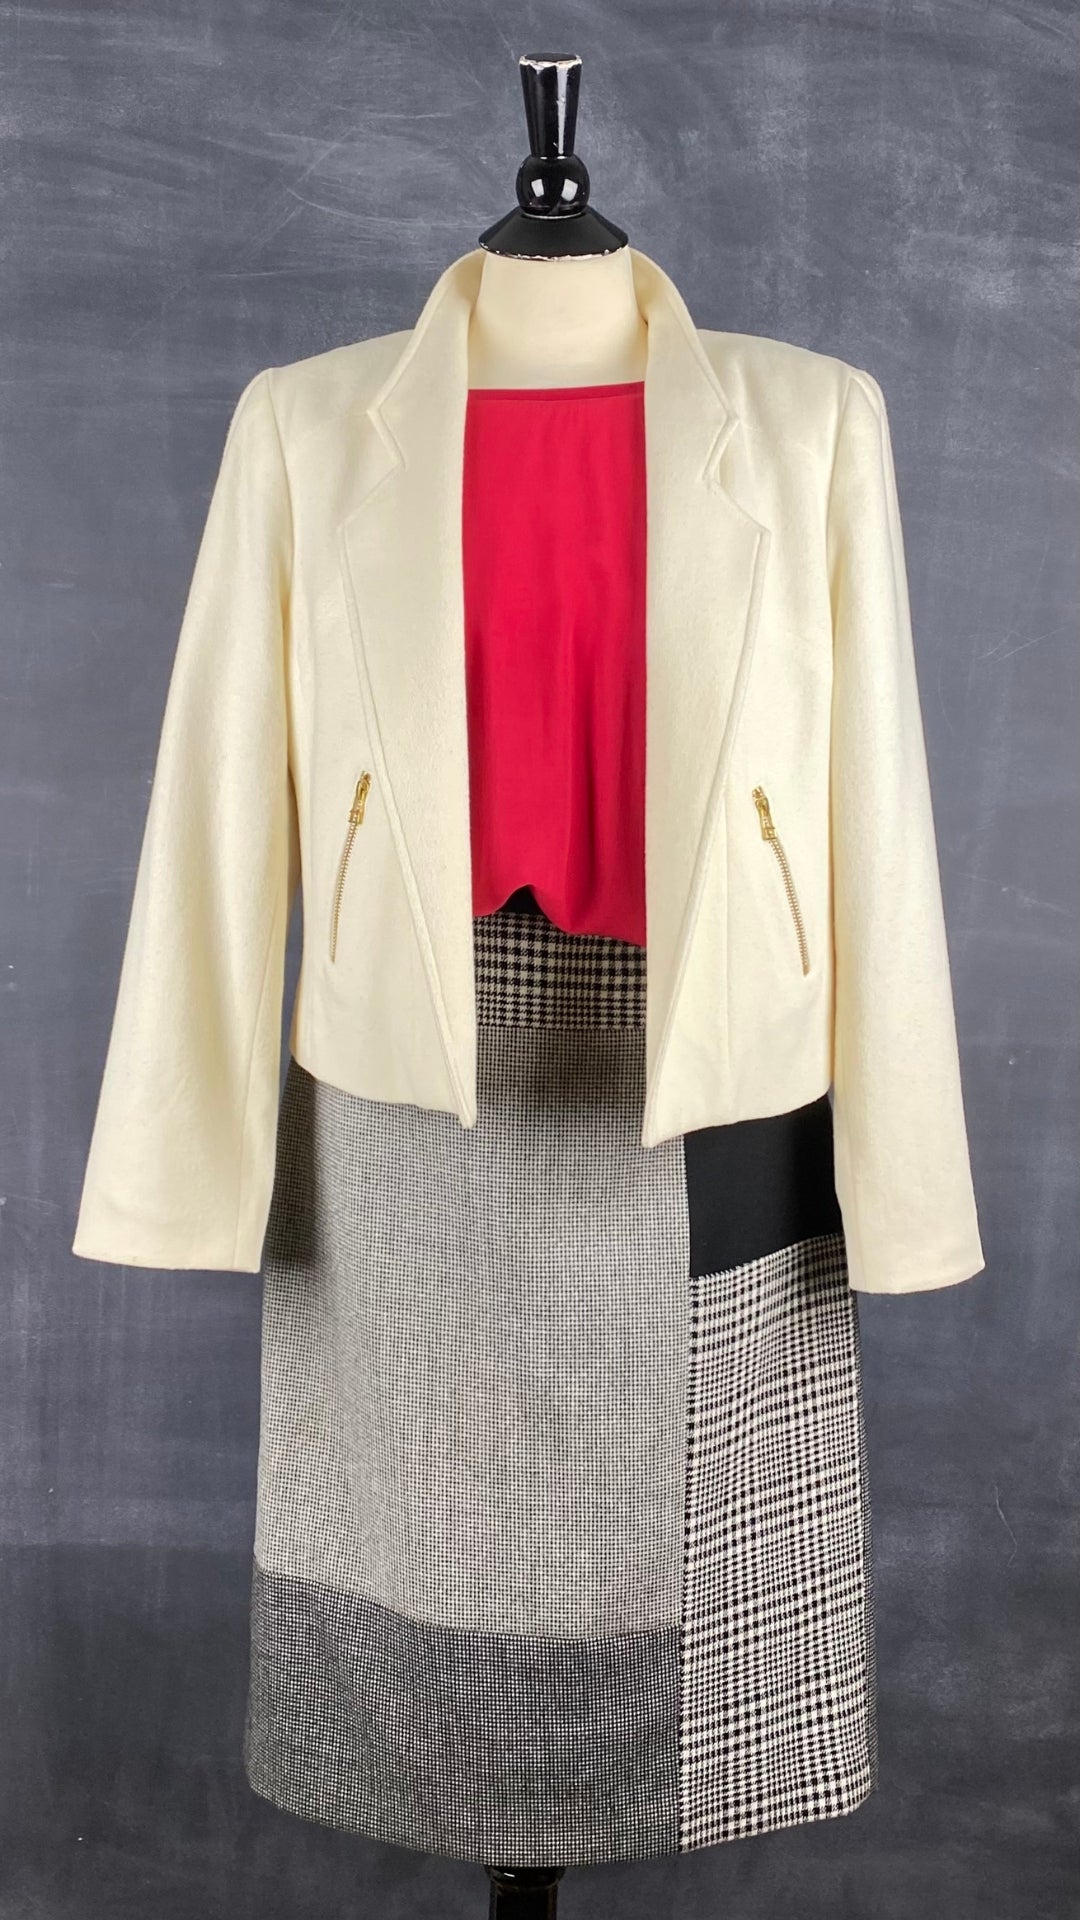 Jupe crayon en lainage à motif pied de poule Judith & Charles, taille 8. Vue de l'agencement chandail rouge et veste crème.